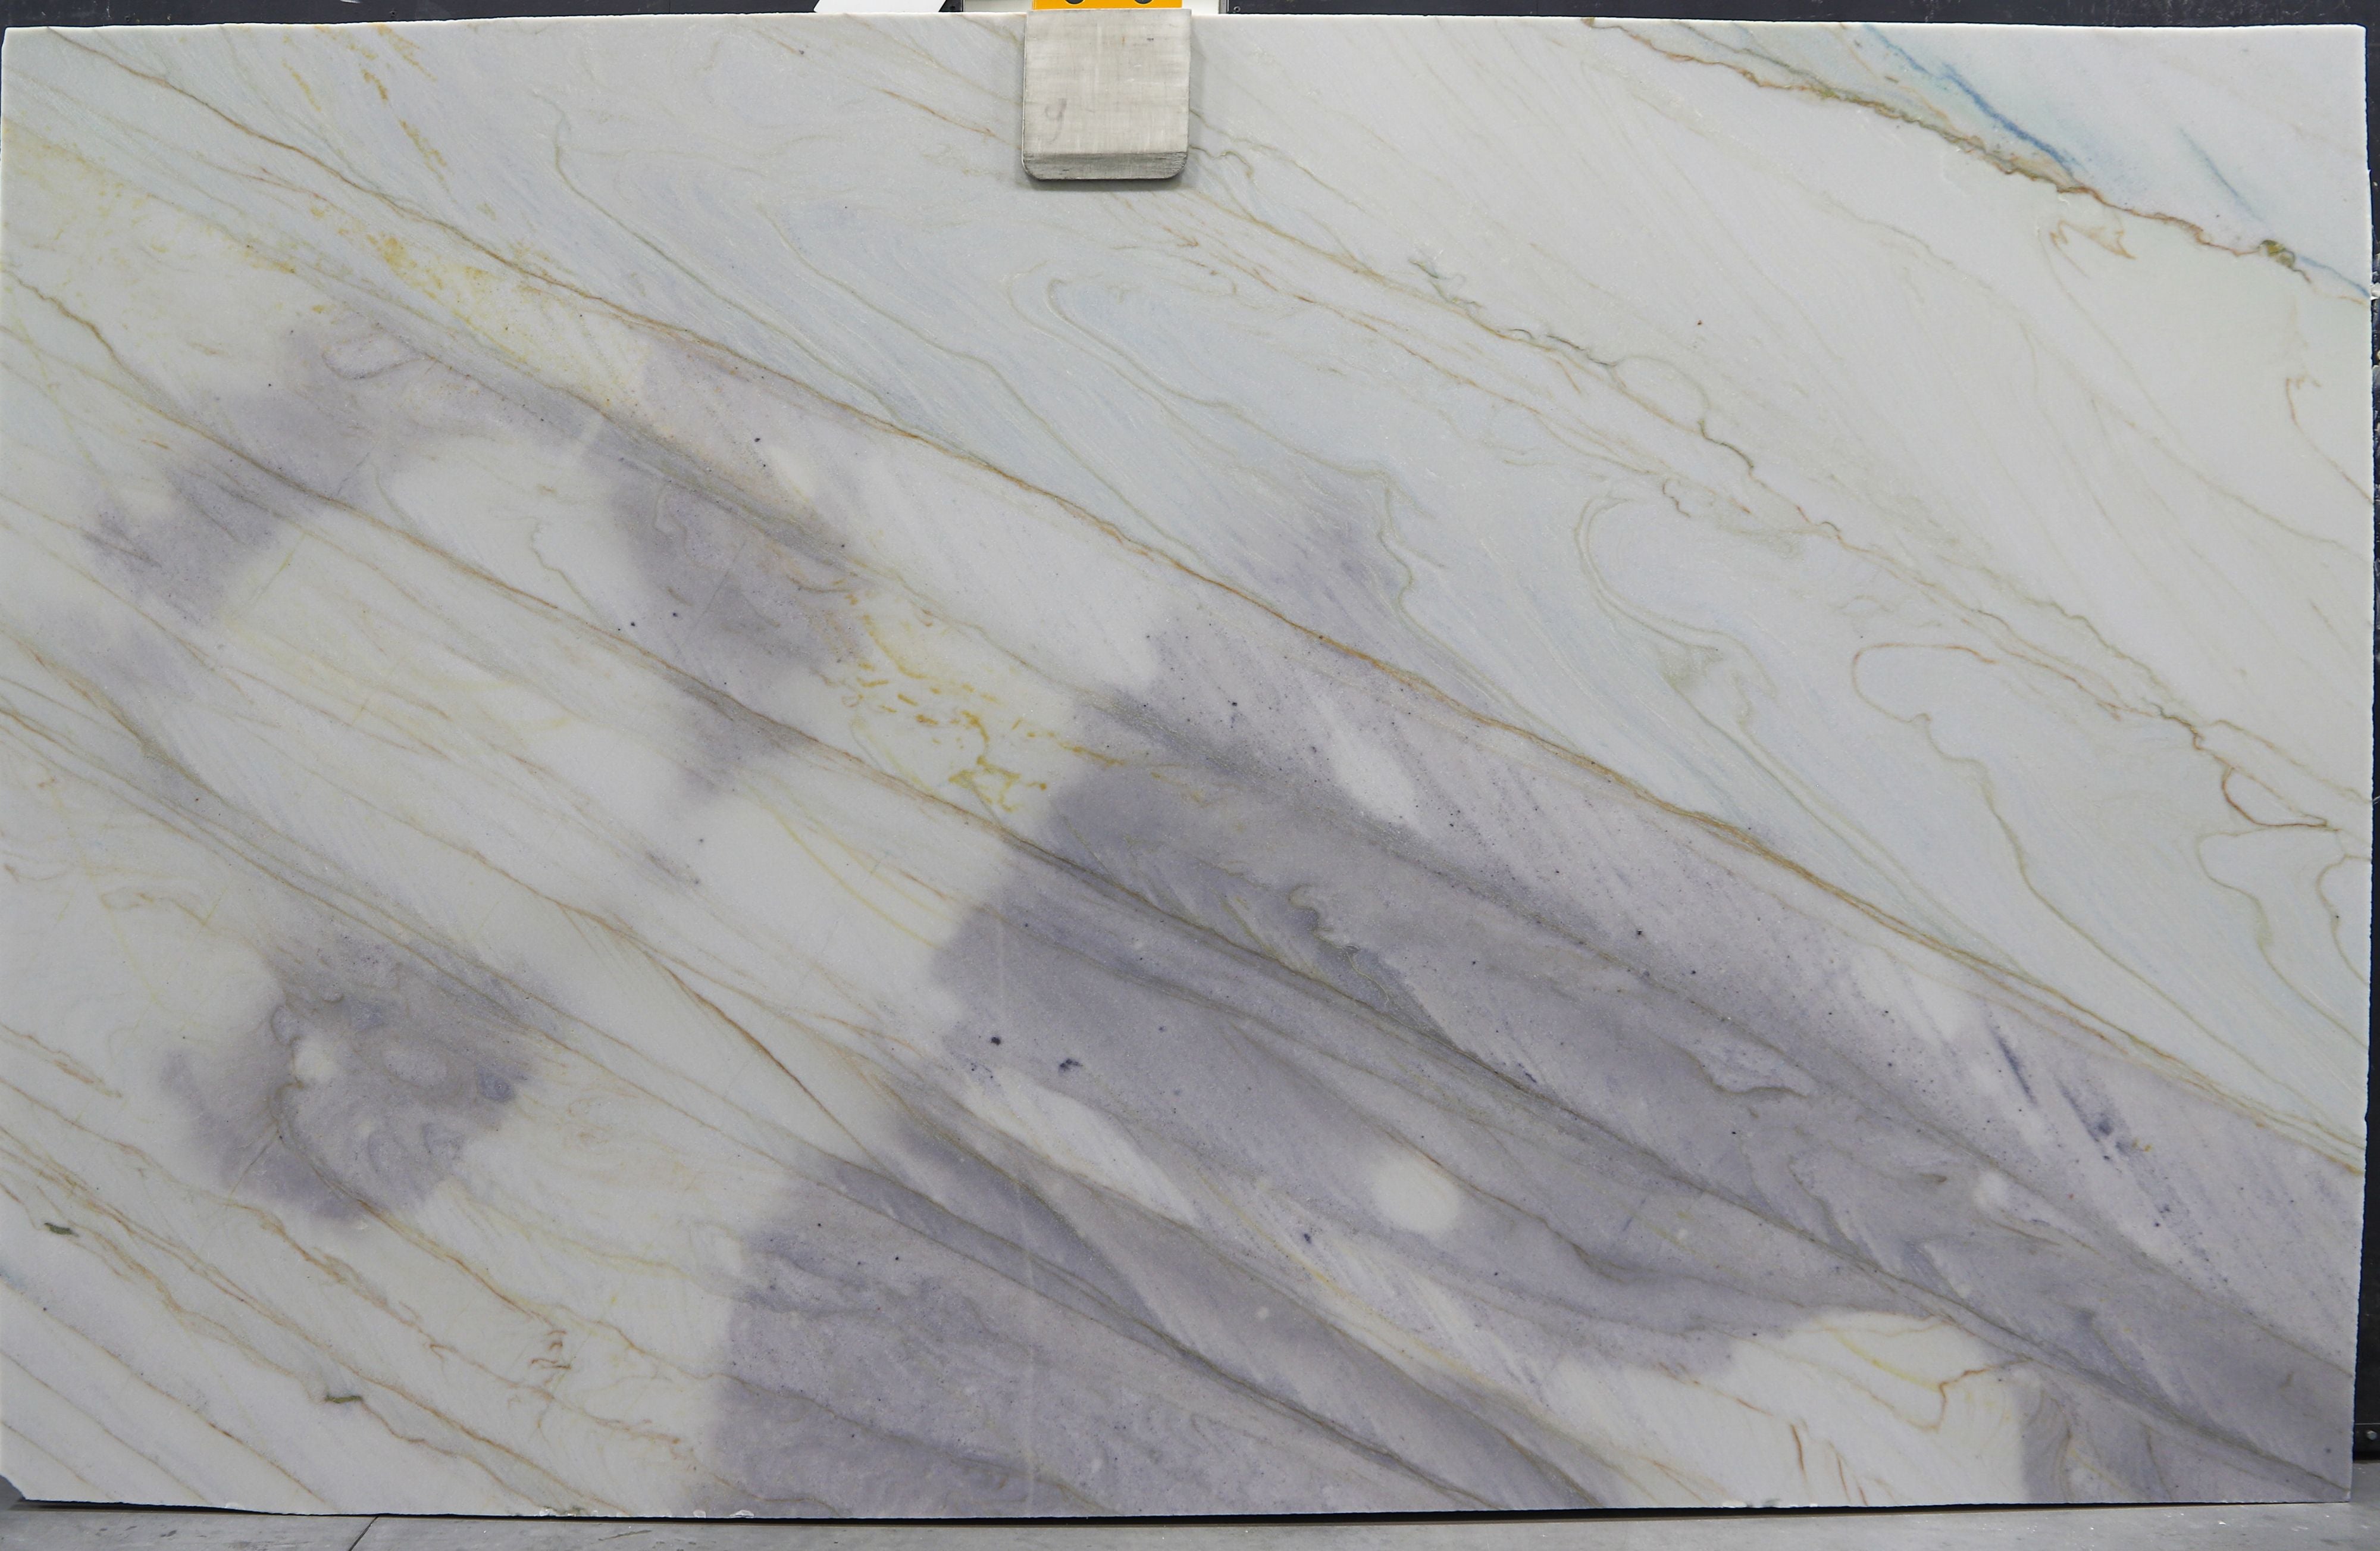  Azulado Quartzite Slab 3/4  Honed Stone - BG13850#31 -  76X123 